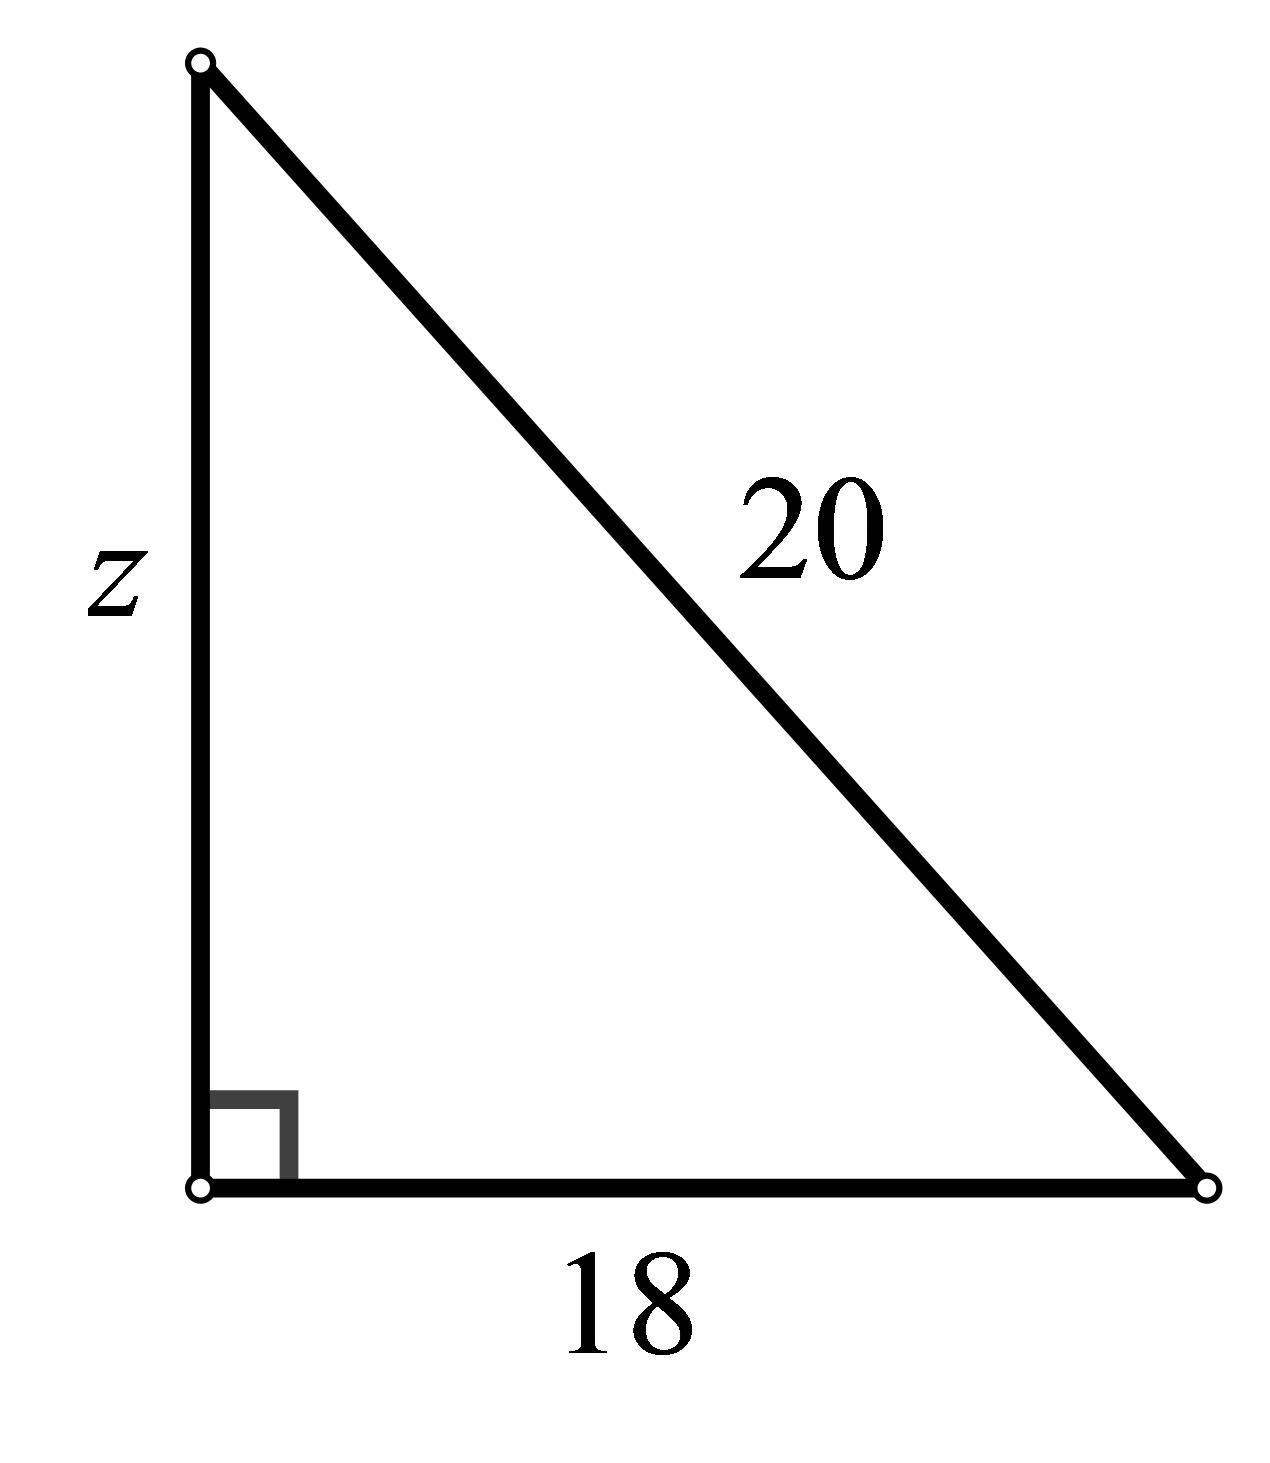 Slika prikazuje pravokutni trokut s hipotenuzom duljine 20 cm i jednom katetom duljine 18 cm